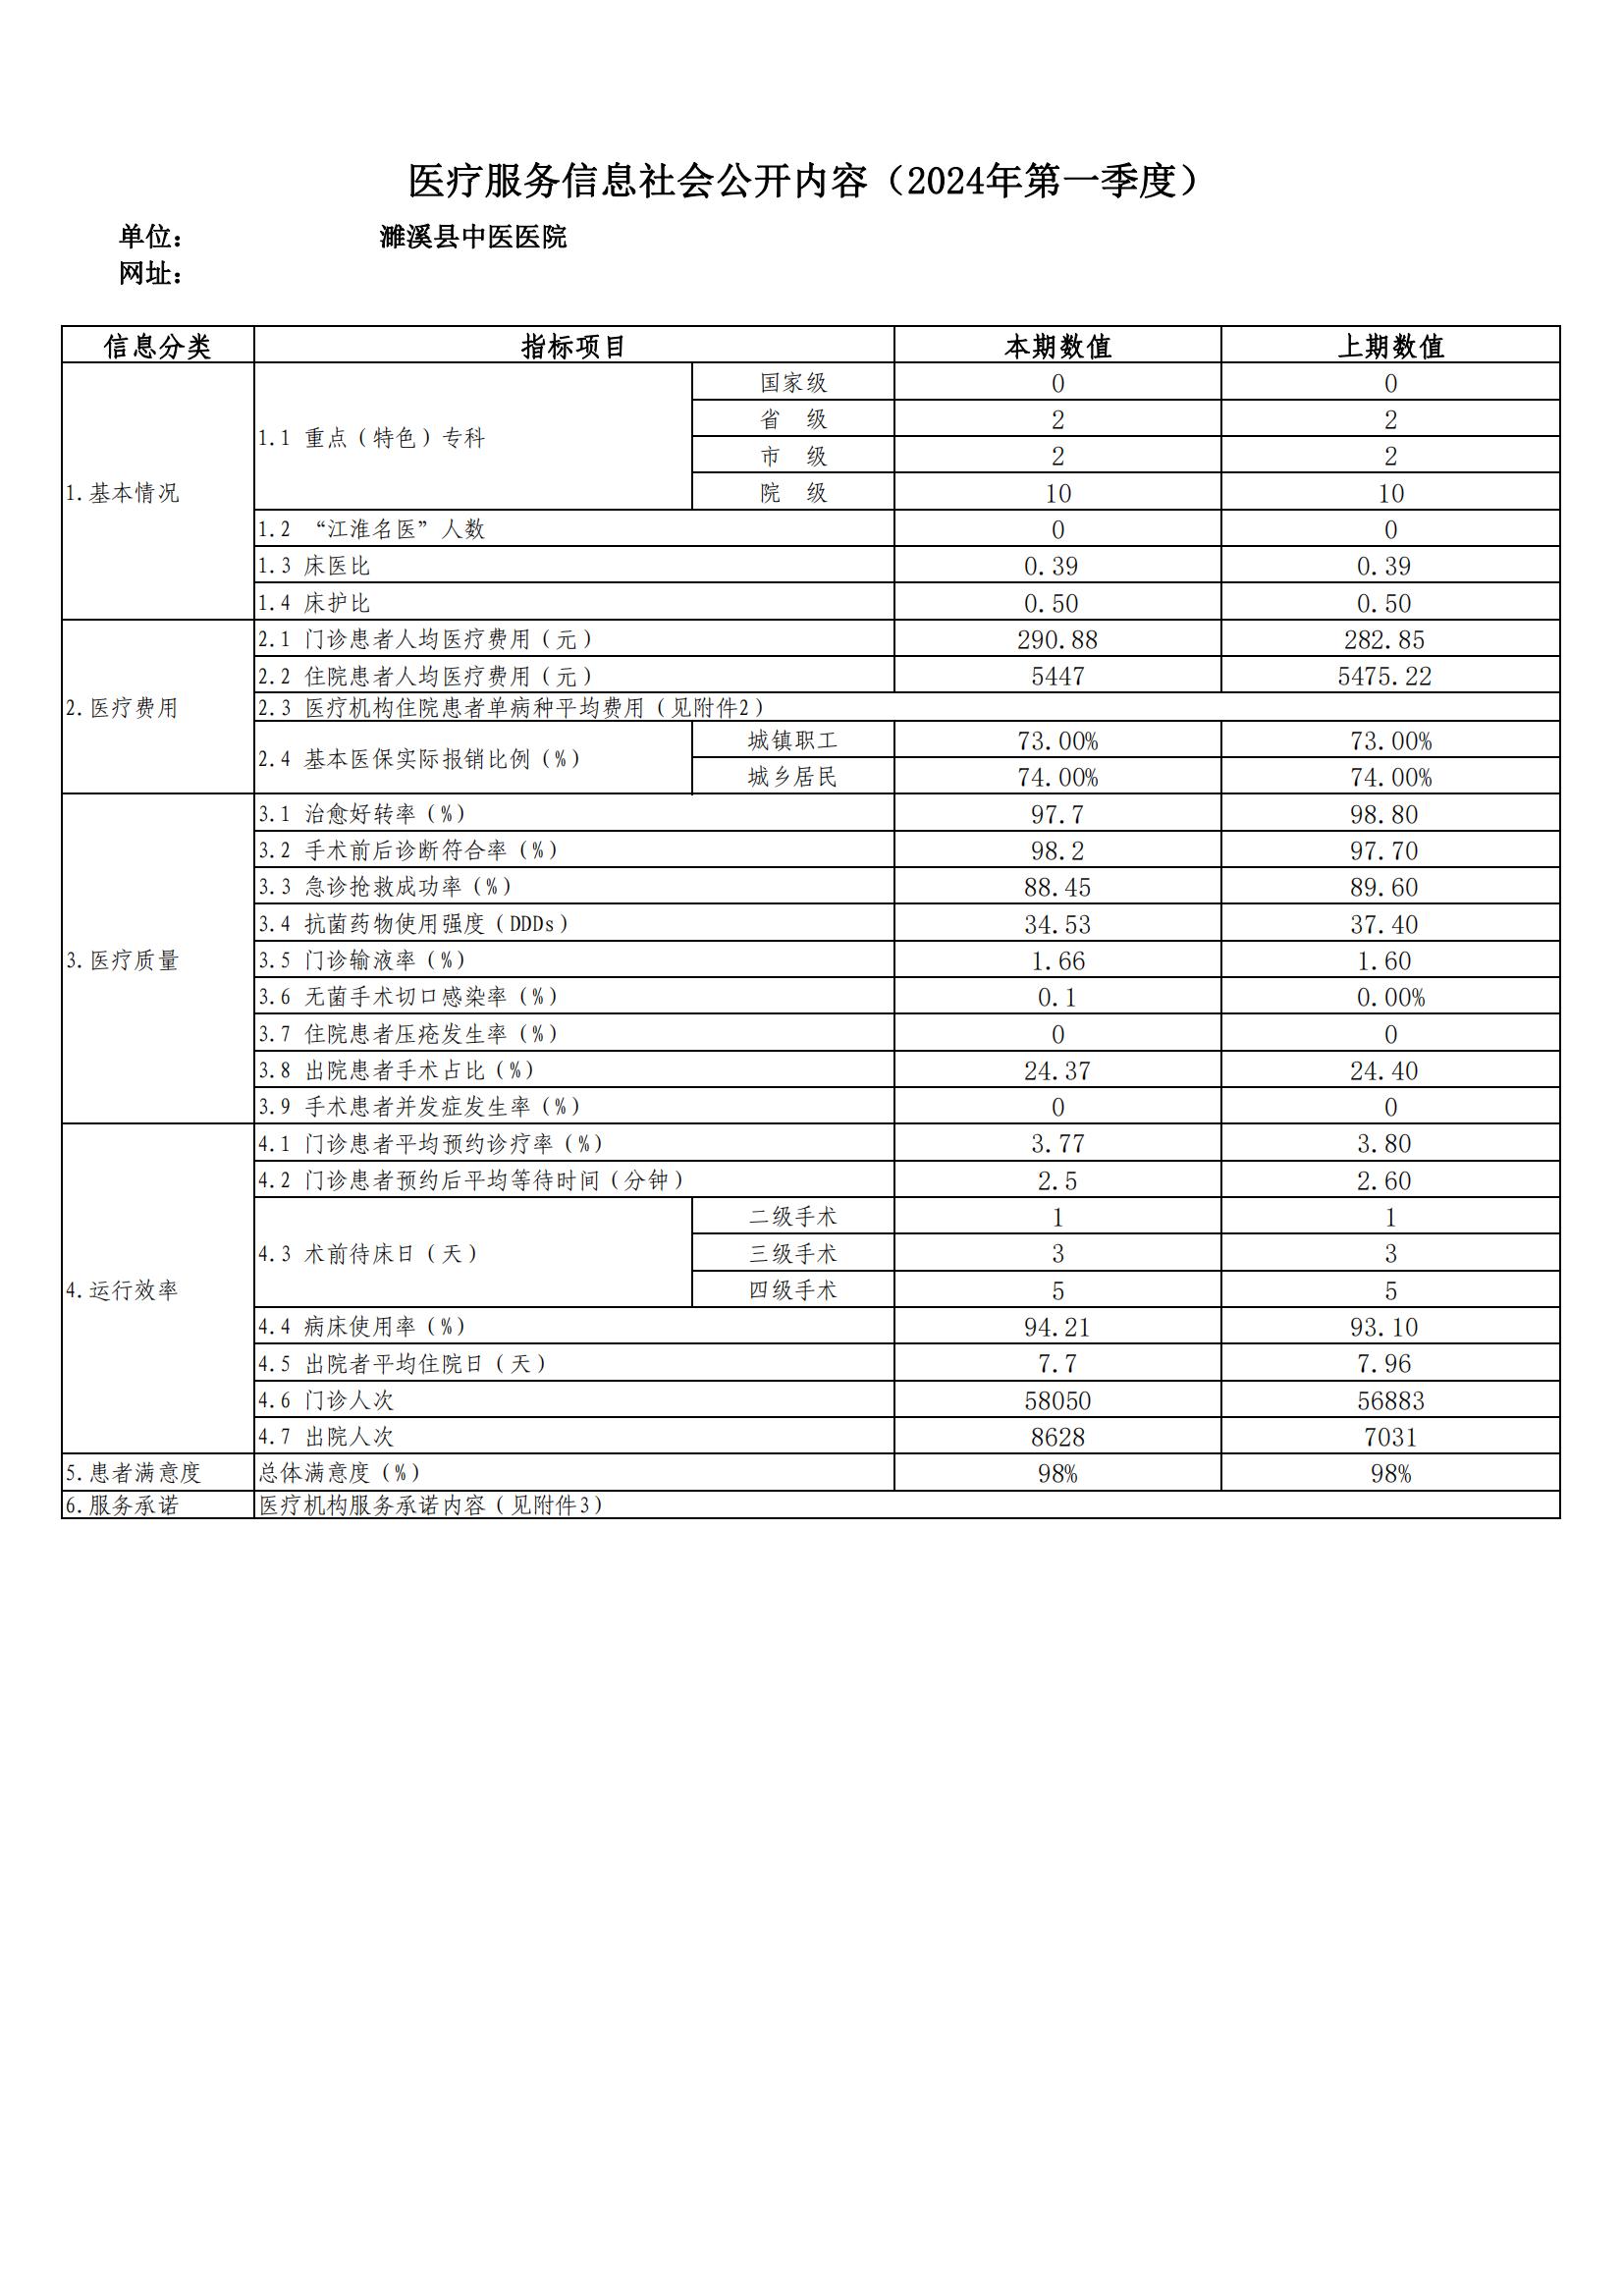 医疗服务信息社会公开内容（濉溪县中医医院2024年第1季度） (1)_00.jpg